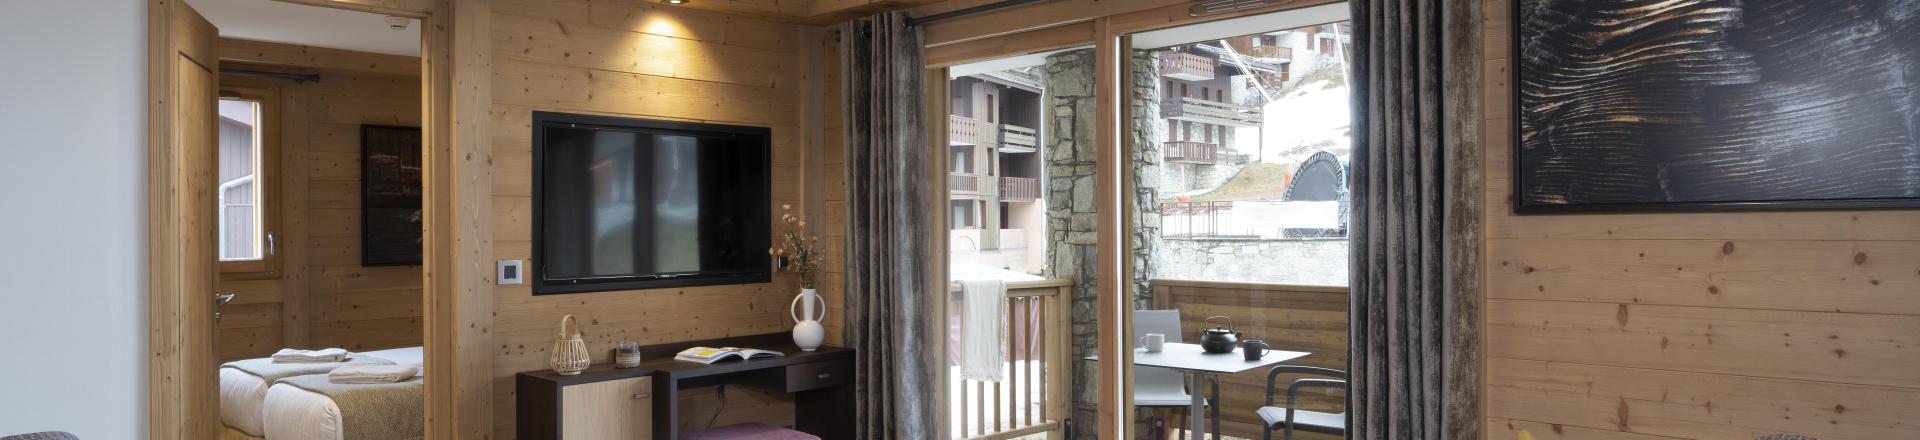 Location au ski Appartement 4 pièces 8 personnes - Résidence Anitéa - Valmorel - Séjour